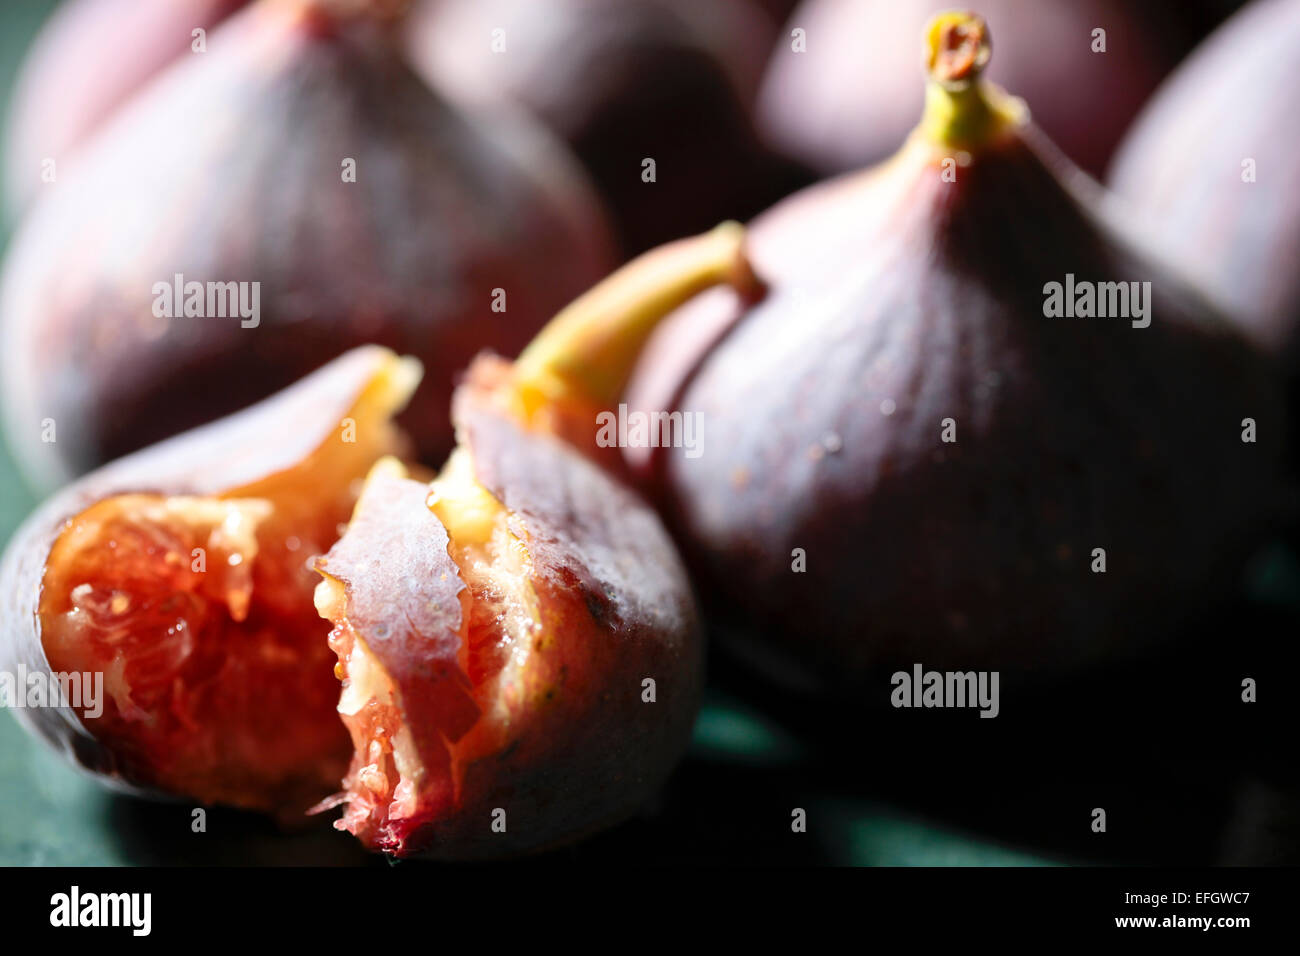 Cerca de higos con uno de sus frutos maduros mitad comido Foto de stock